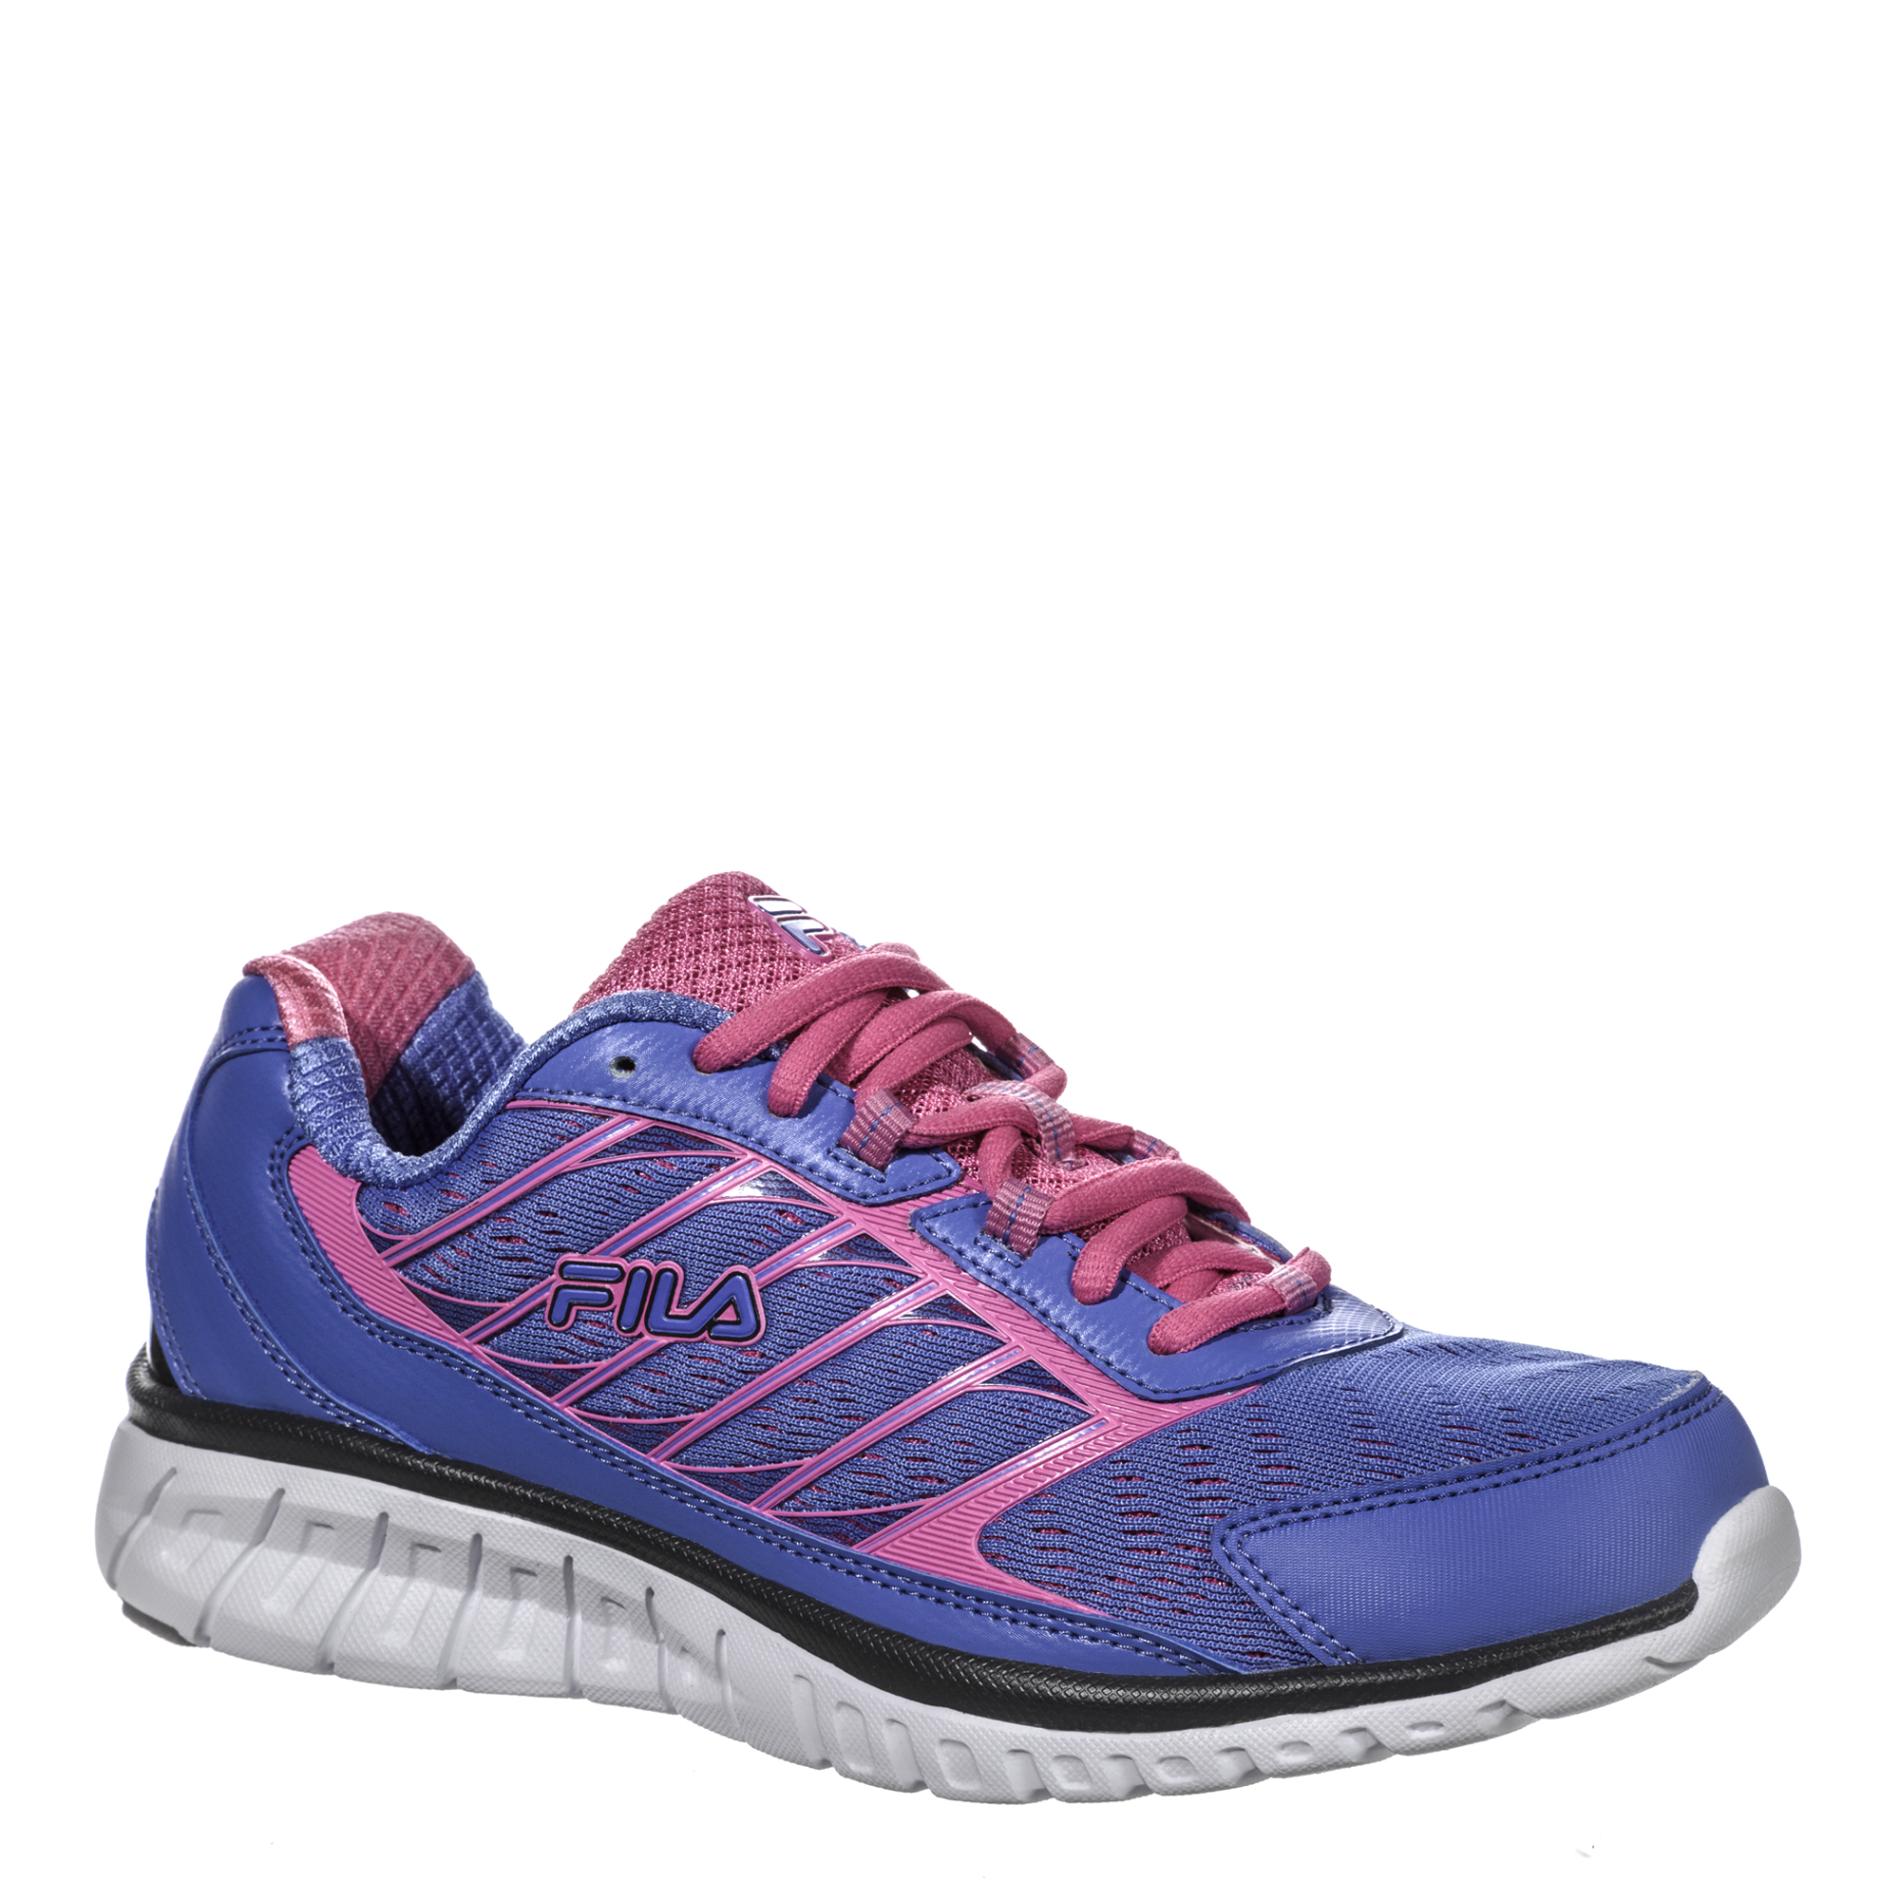 Fila Women's Hyper Split Athletic Shoe - Blue/Pink